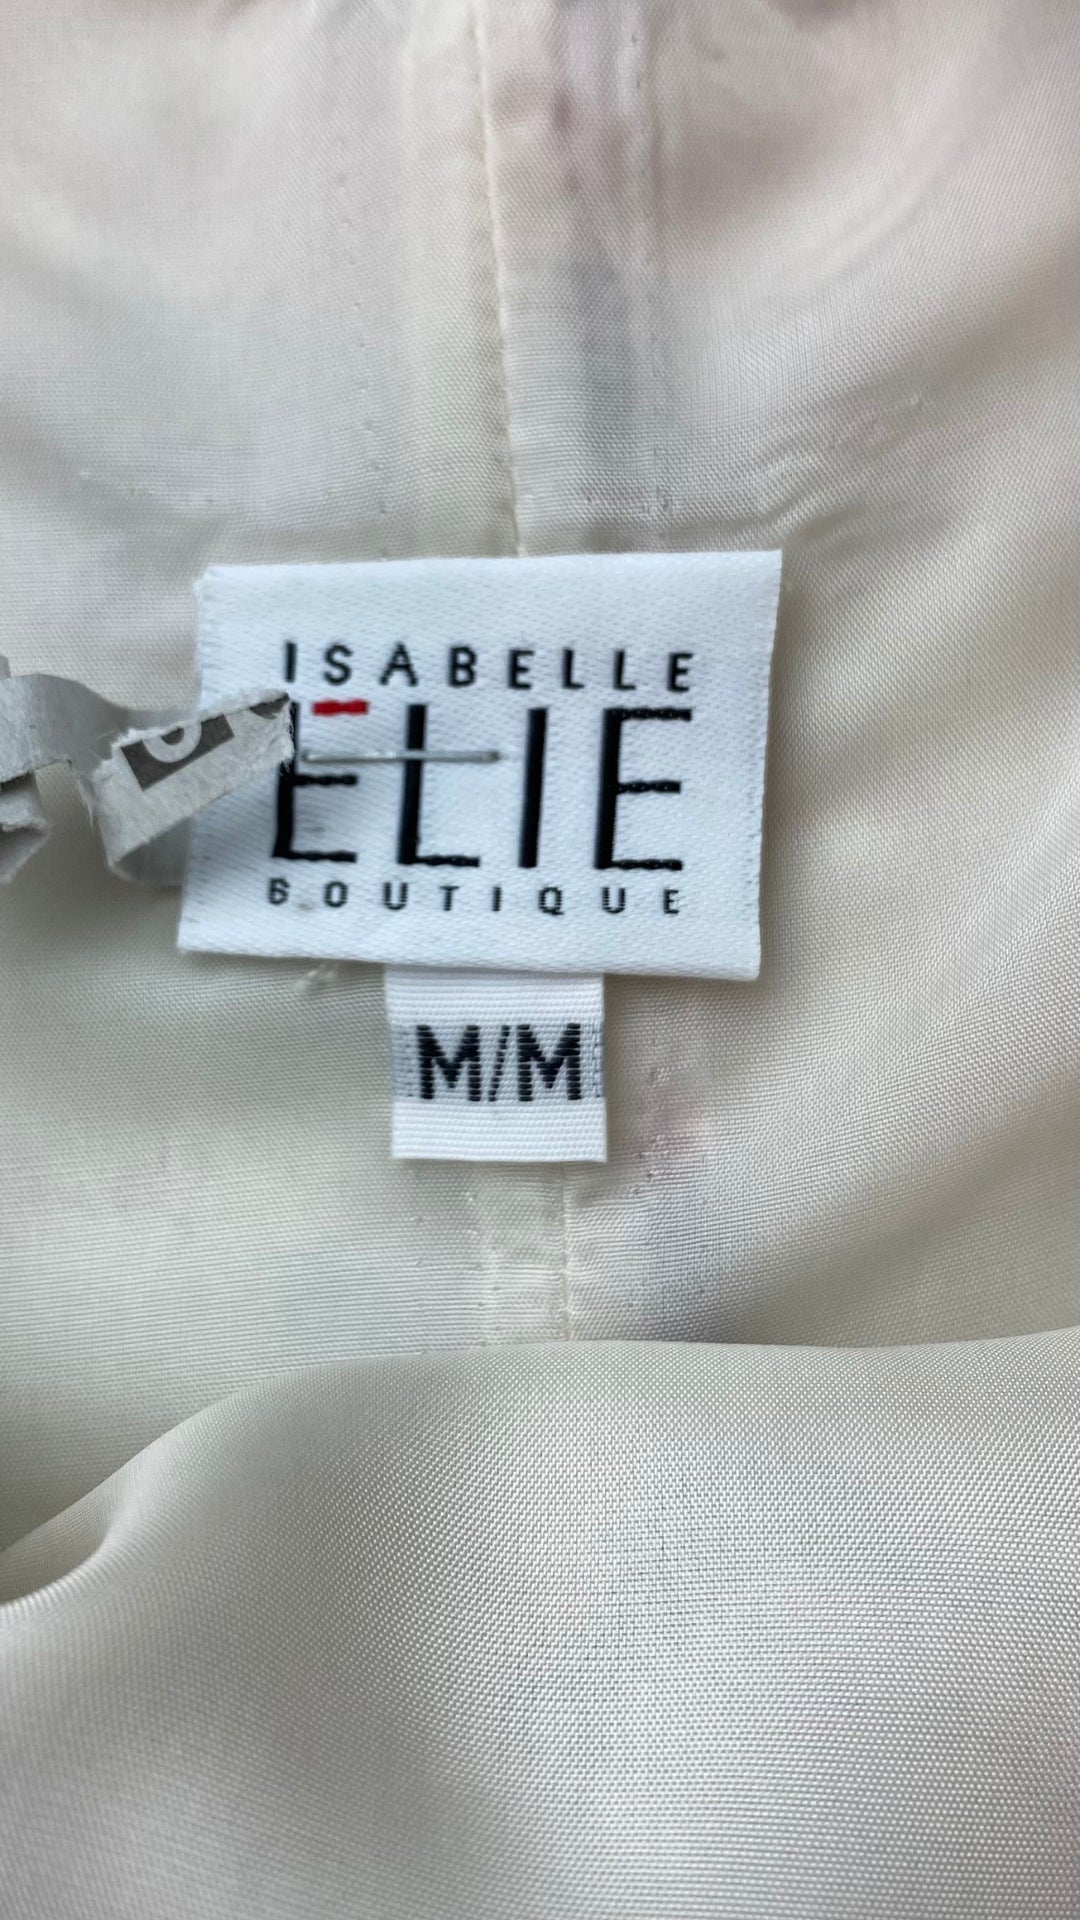 Robe florale en soie Isabelle Elie, taille medium. Vue de l'étiquette de marque et taille.